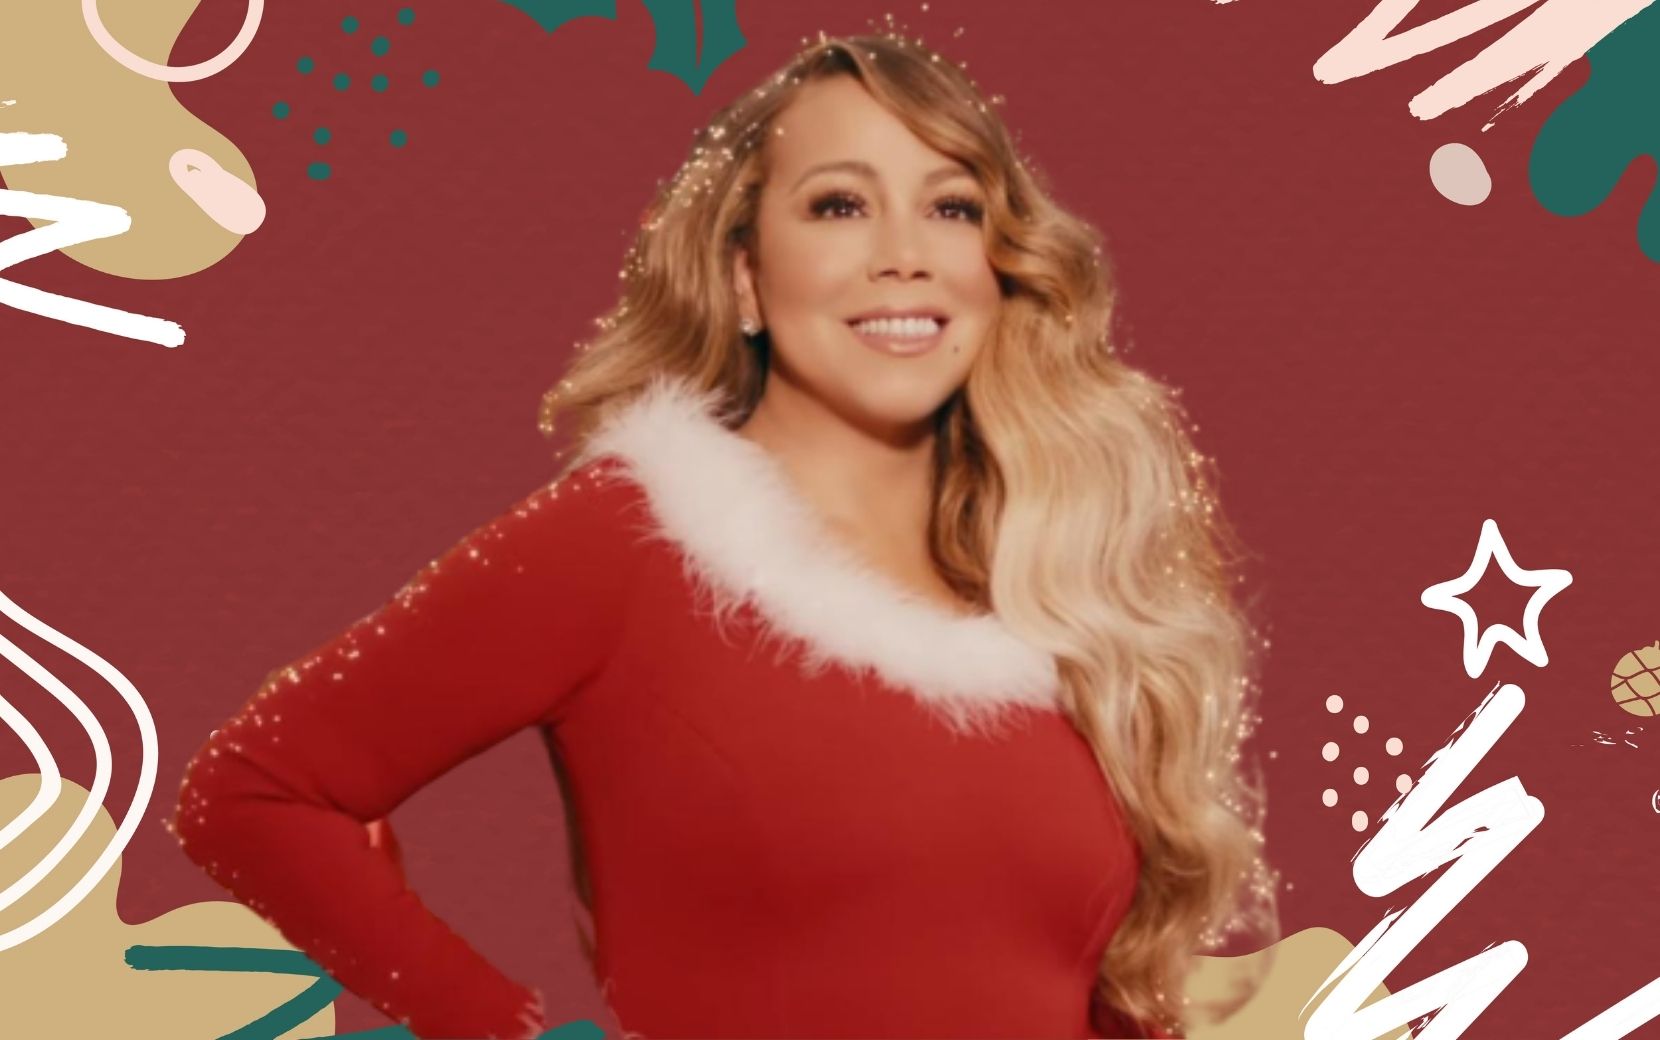 Música mais tocada no Spotify em 24h: Mariah Carey quebra novo recorde com “All I Want for Christmas is You”